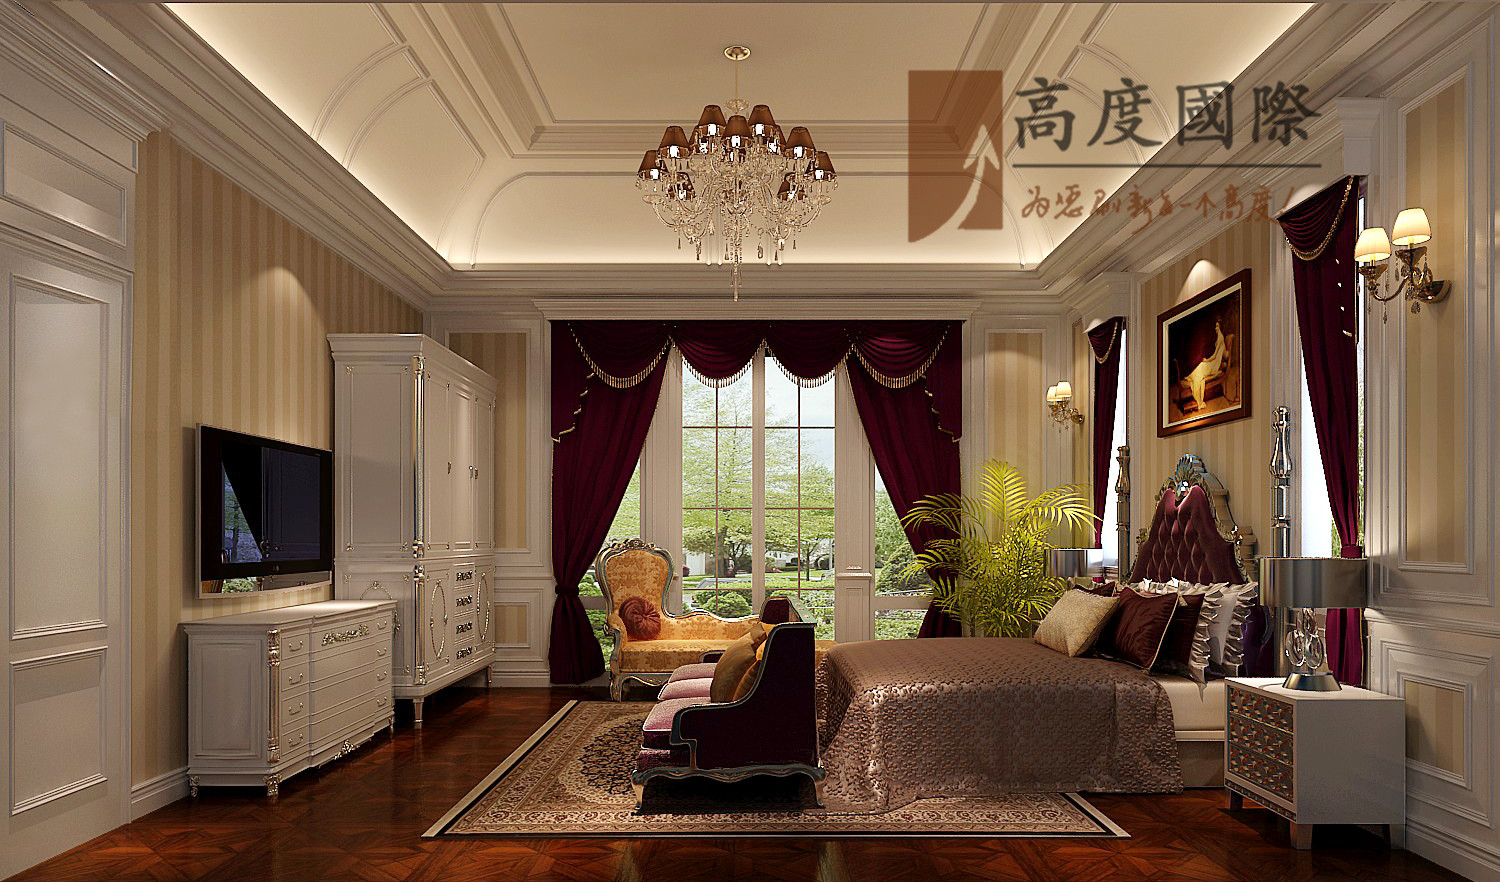 蔚蓝卡地亚 别墅装饰 法式风格 卧室图片来自bfsdbfd在蔚蓝卡地亚-----法式风格的分享